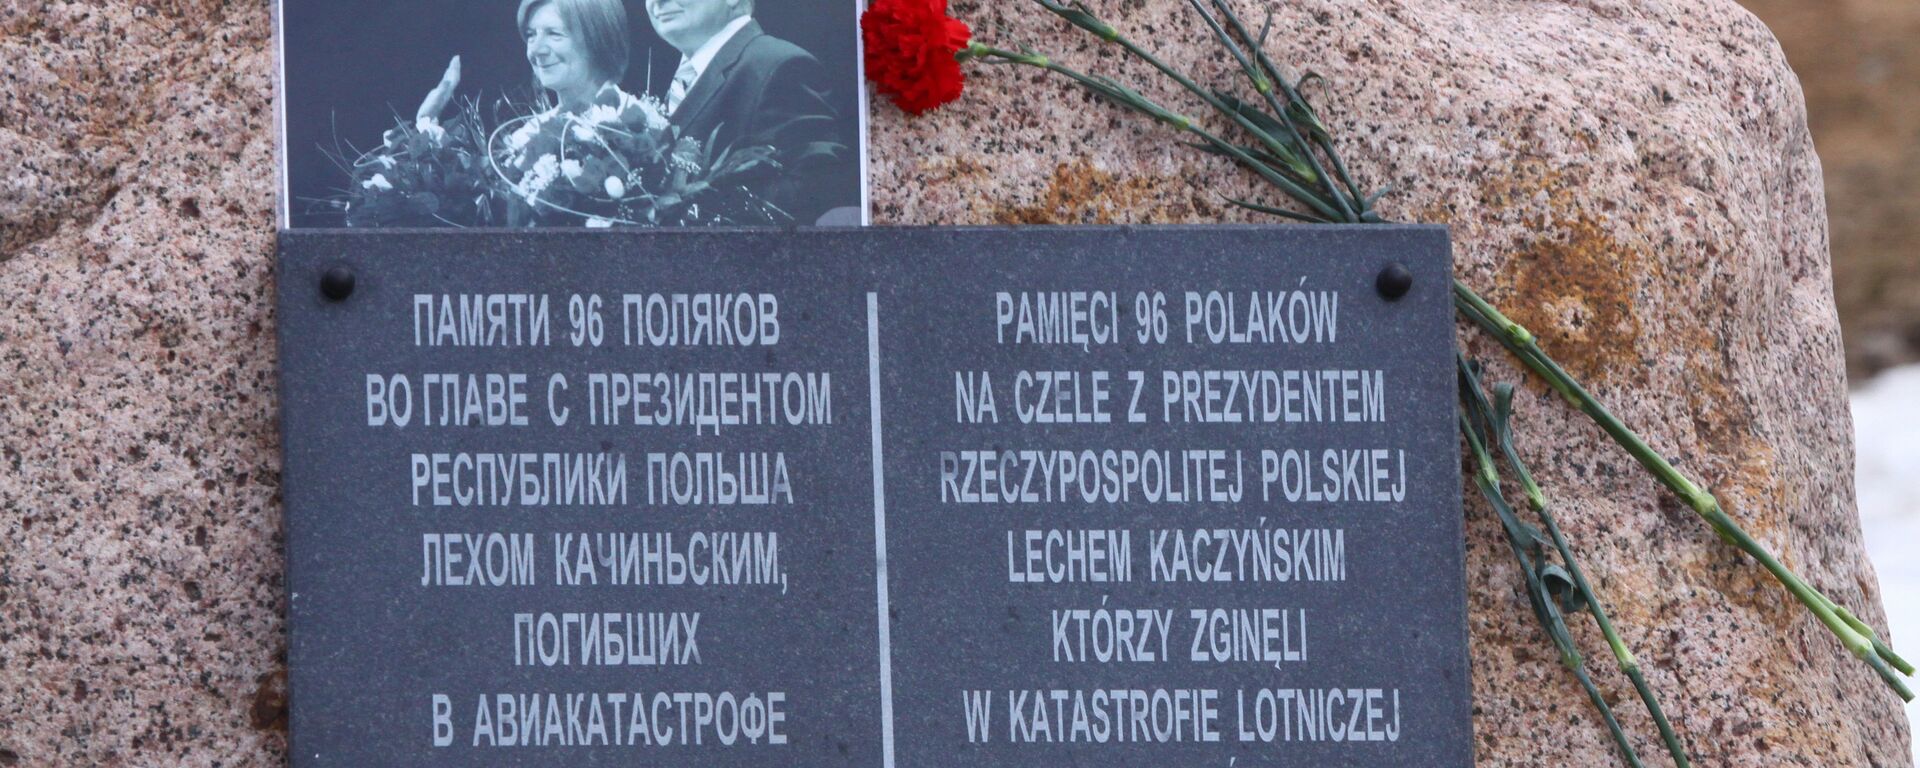 Мемориальная табличка на памятном камне, установленном на месте крушения польского самолета Ту-154 10 апреля 2010 года - Sputnik Литва, 1920, 08.04.2020